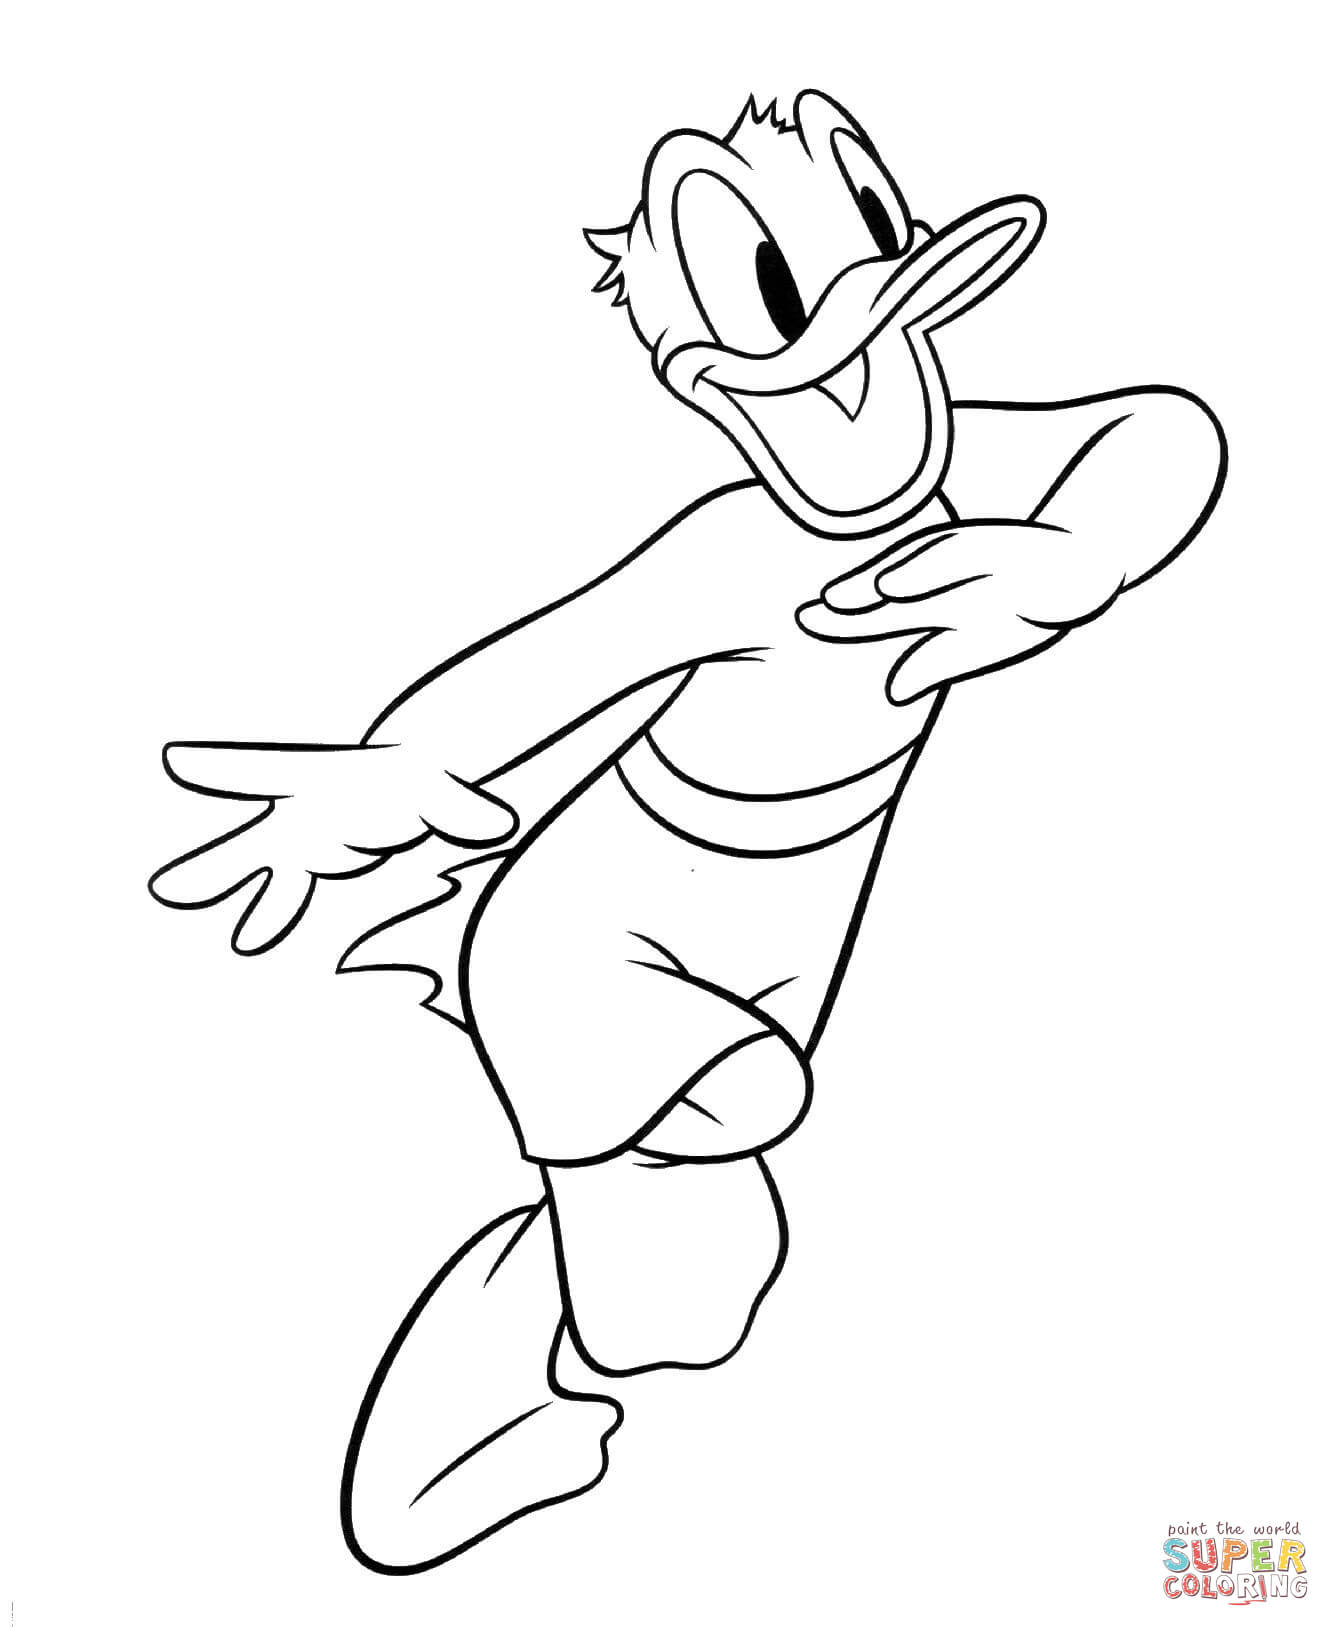 Coloriage donald duck gratuit - dessin a imprimer #41